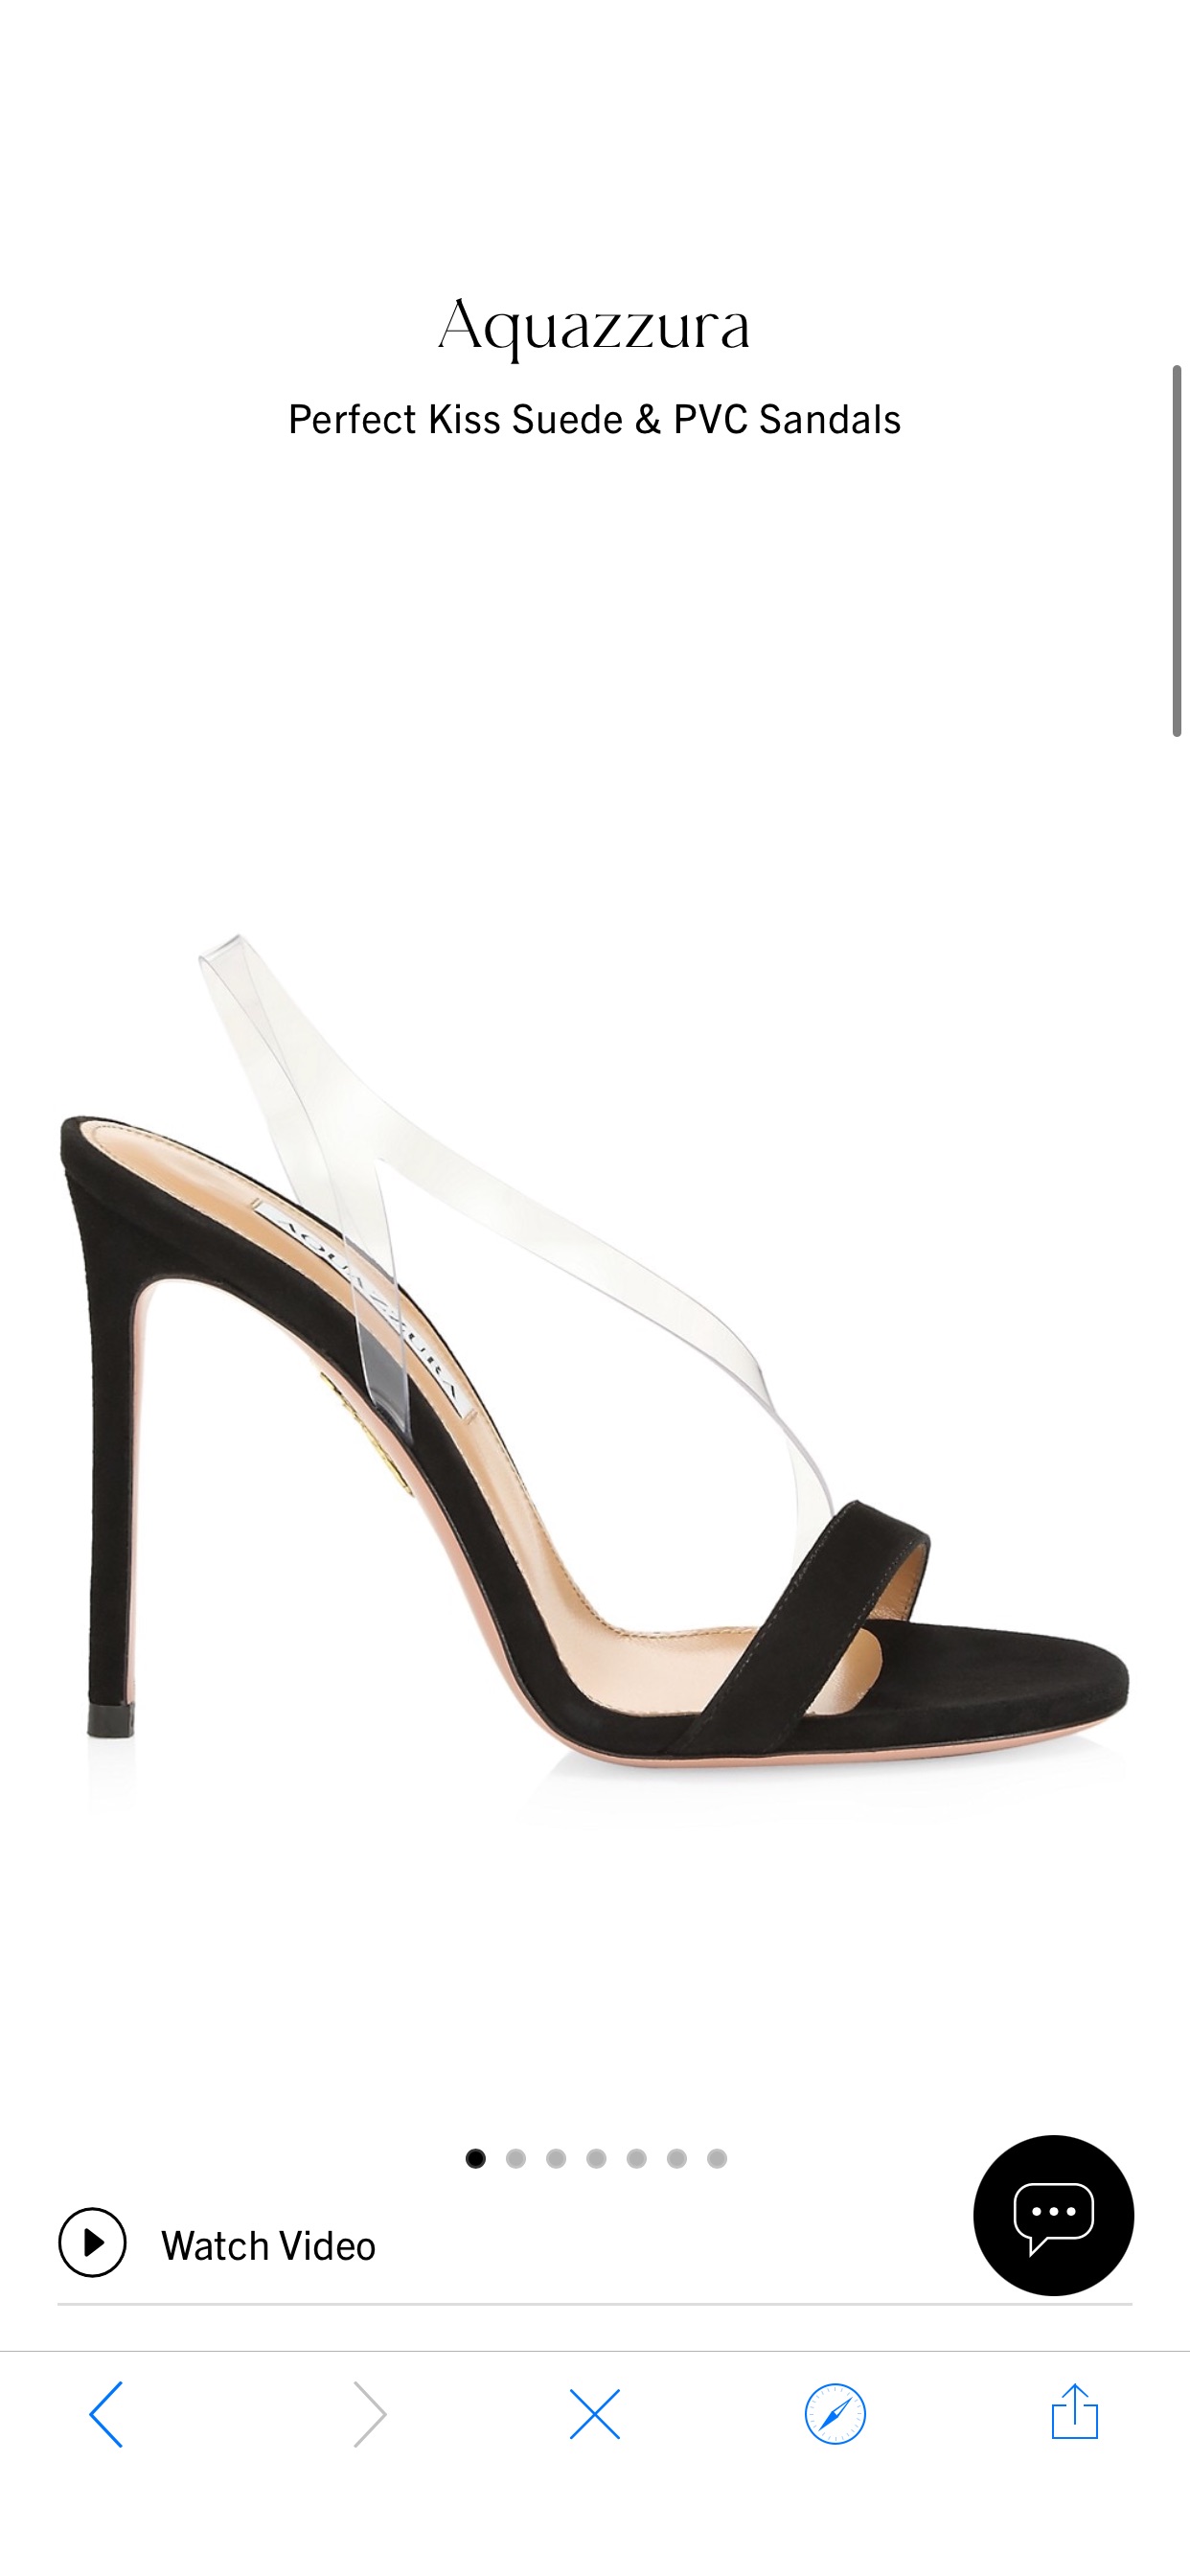 Shop Aquazzura Perfect Kiss Suede & PVC Sandals | Saks Fifth Avenue
鞋子